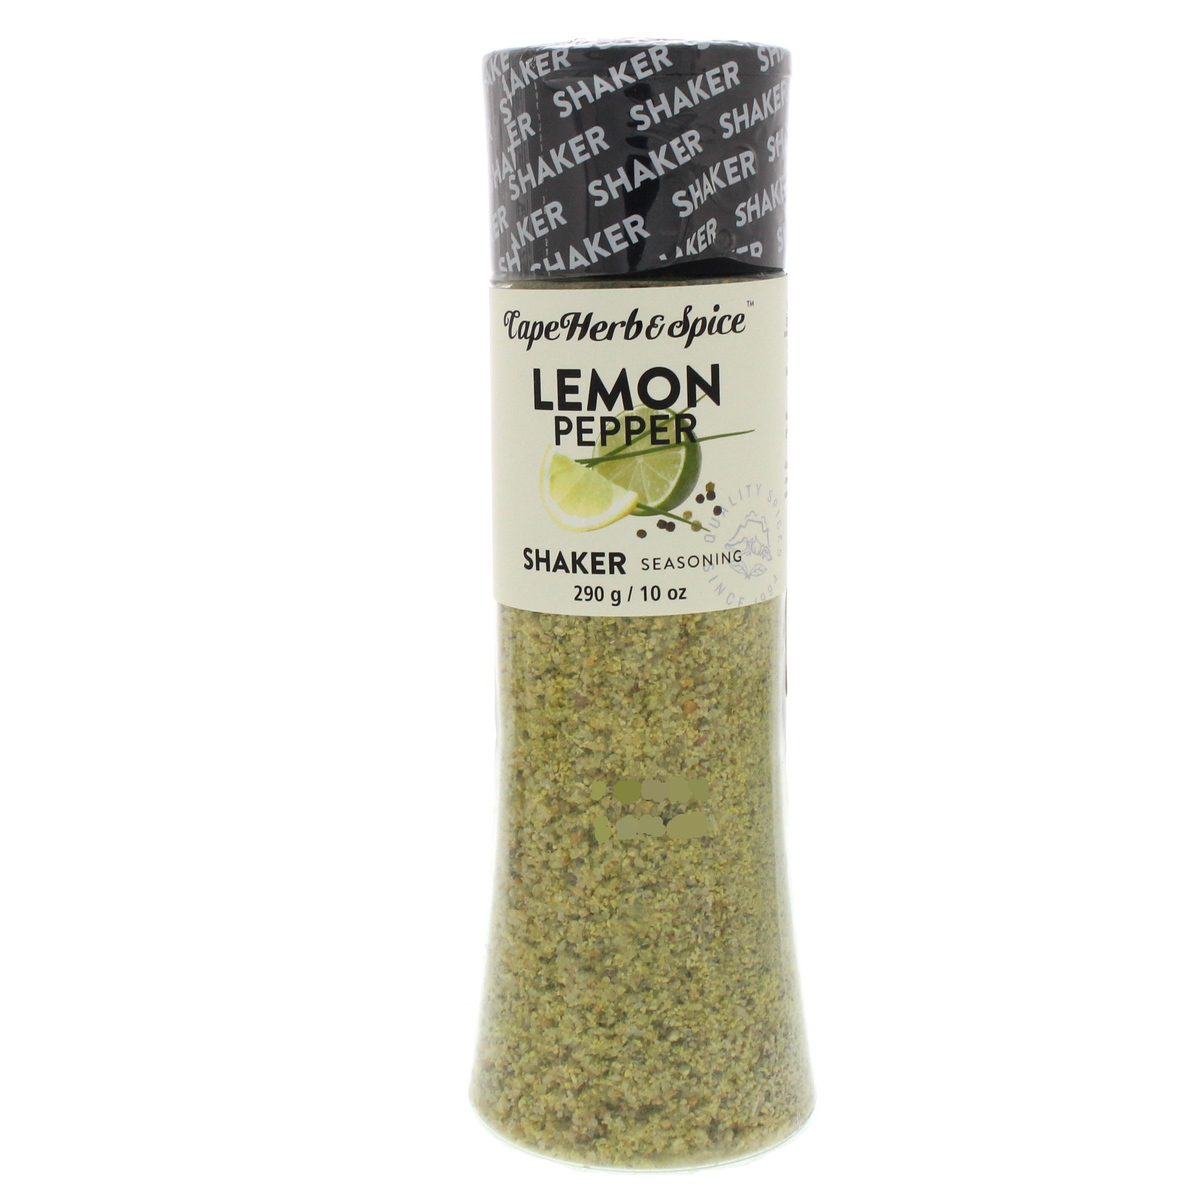 Cape  & Spice Lemon Pepper Shaker Seasoning 290g